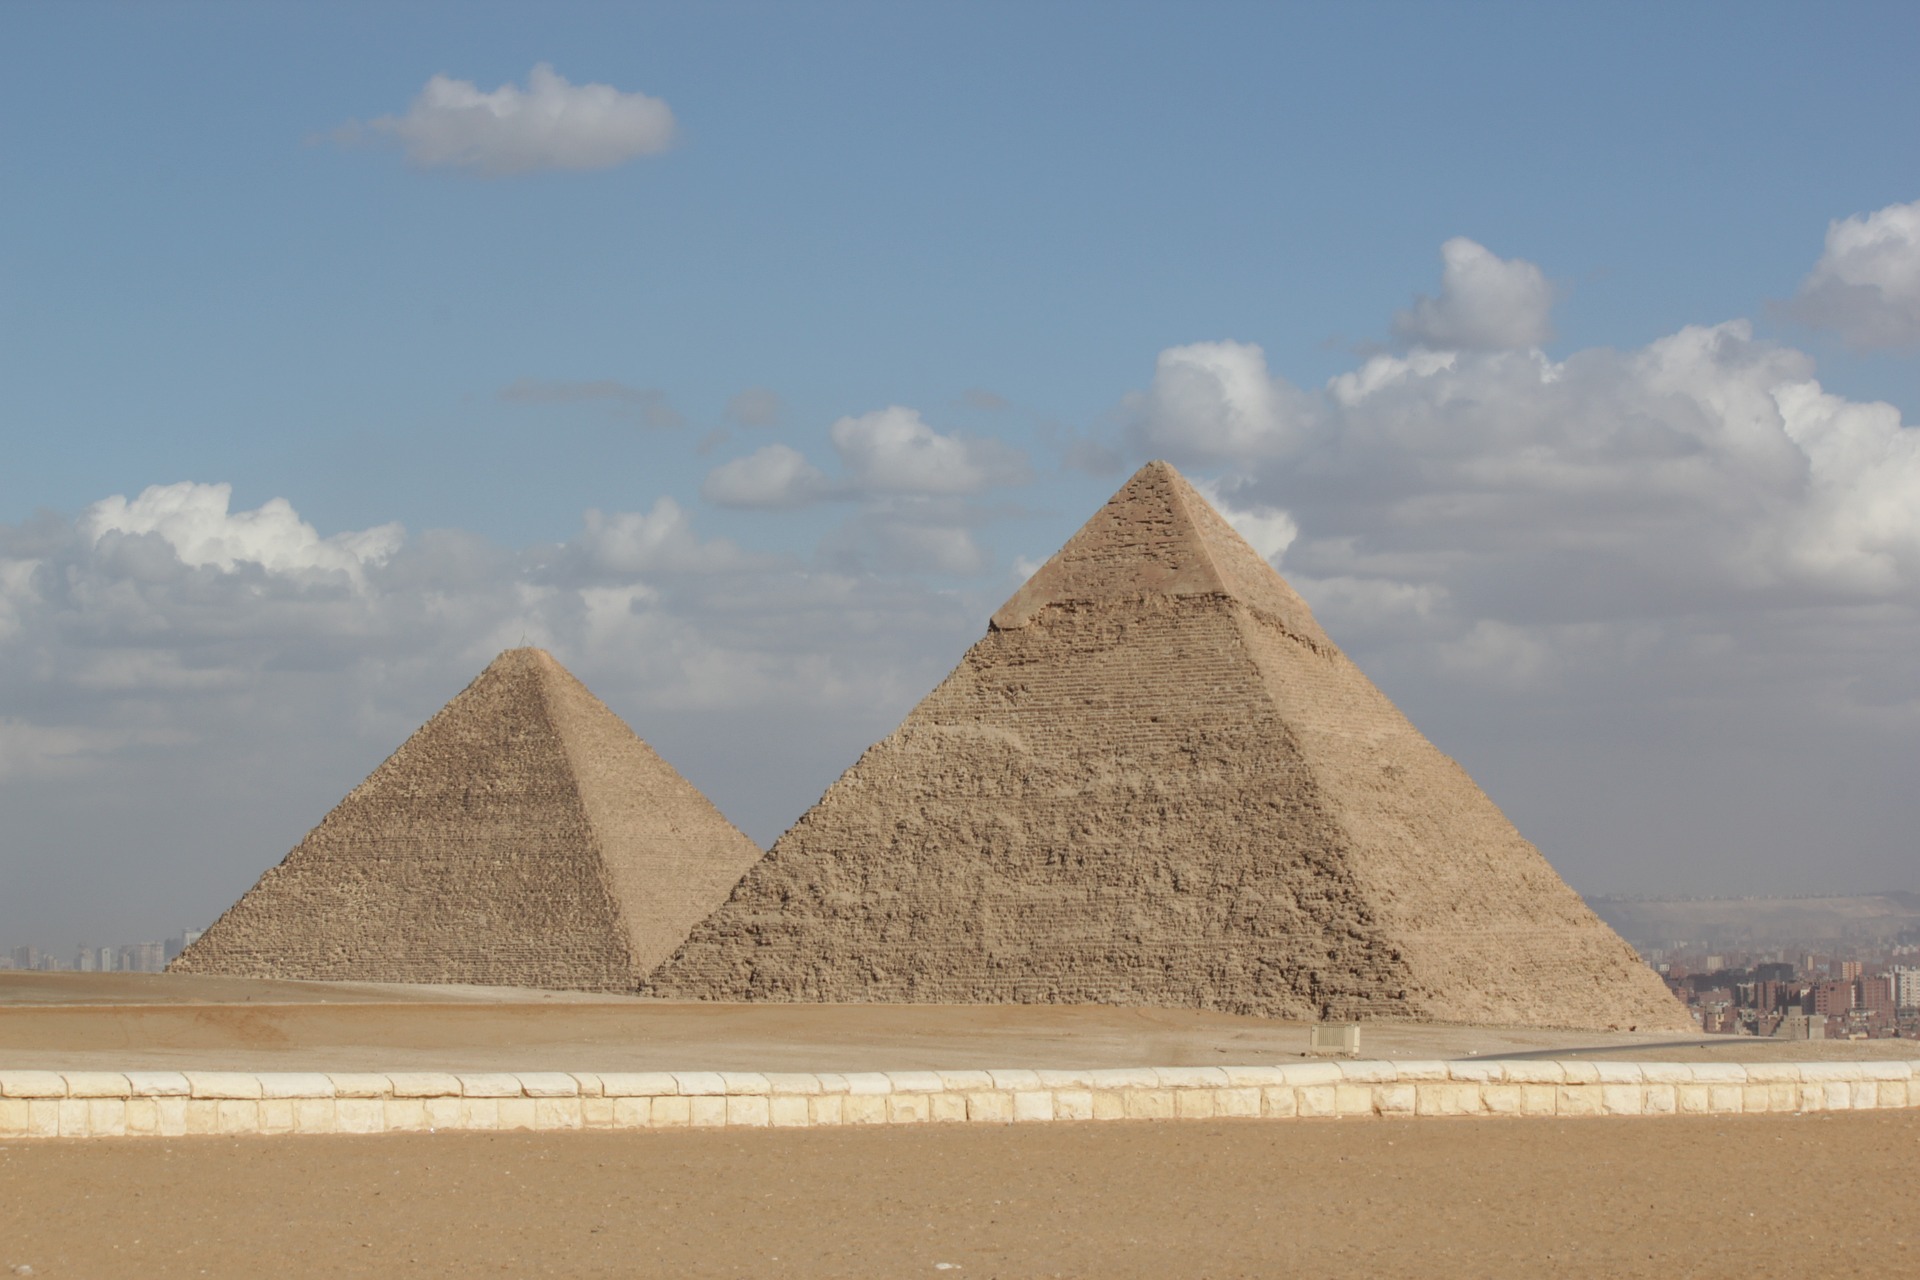 Rejtélyes föld alatti építményre találtak a gízai piramisok mellett régészek egy földradarral